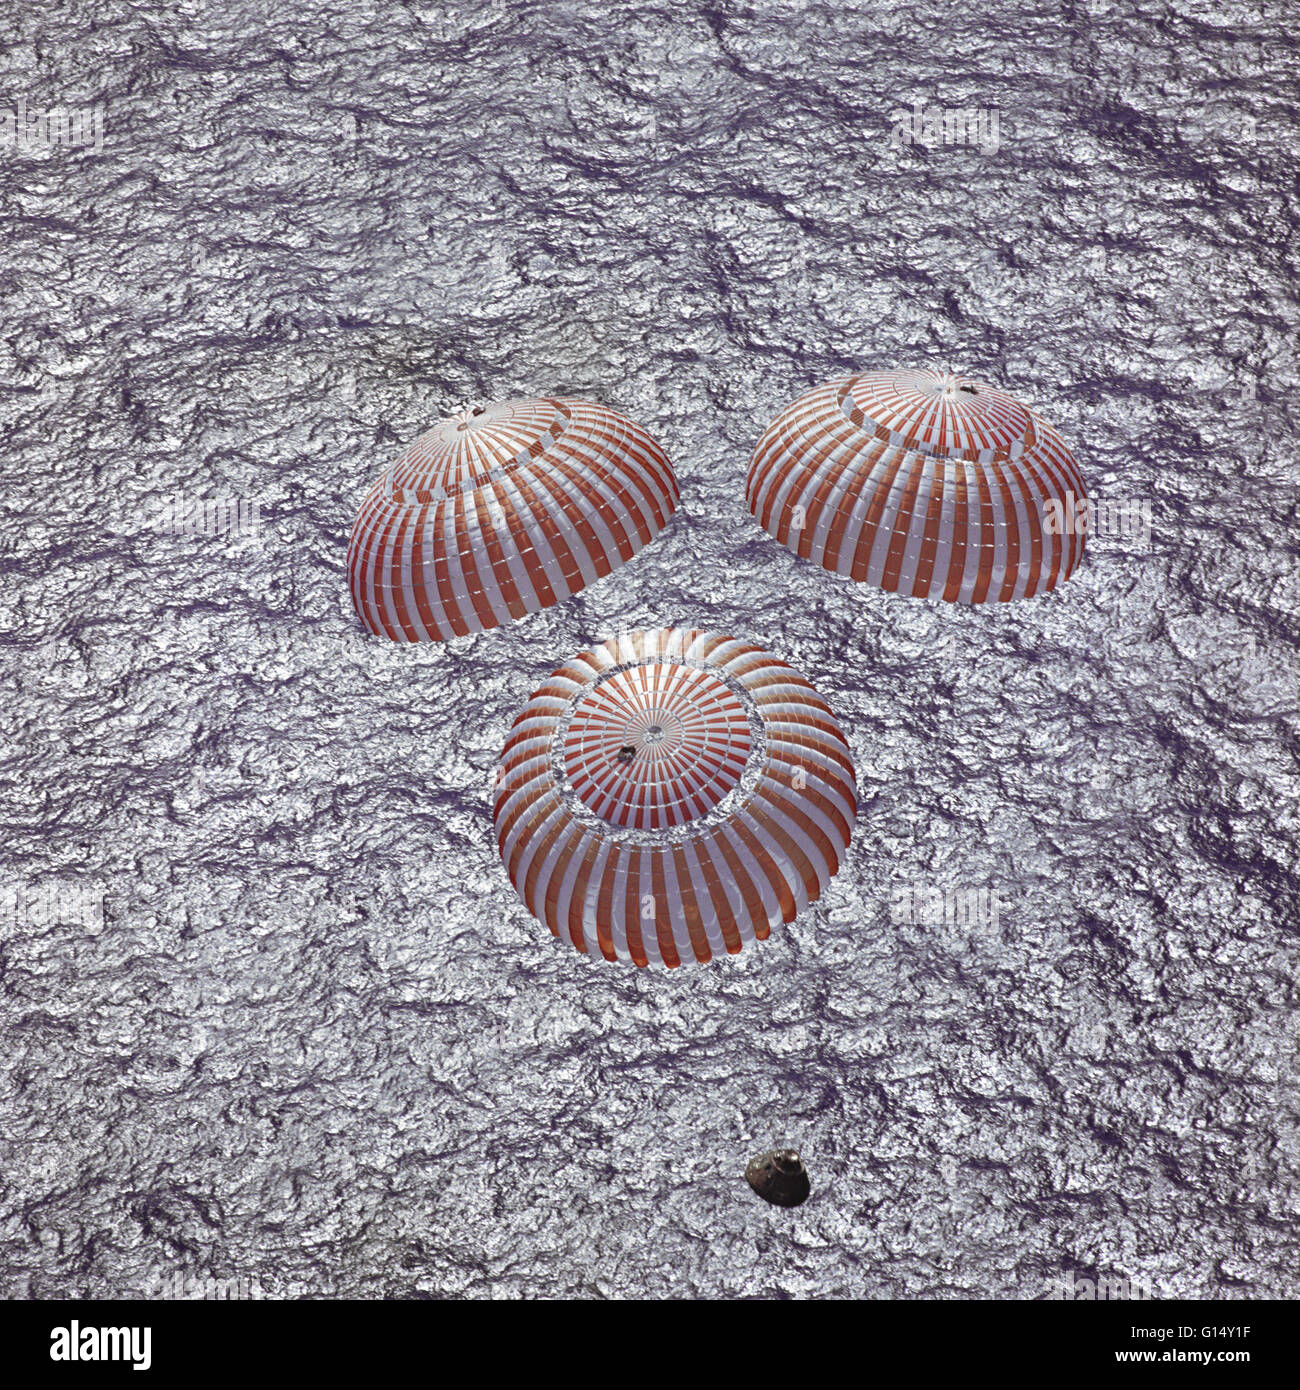 Le module de commande Apollo 16 avec les astronautes, John W. Young, Thomas K. Mattingly II et Charles M. Duc Jr. à bord, s'approche de splashdown dans l'océan Pacifique central pour mener à bien une mission d'atterrissage lunaire. Cette photo a été prise au-dessus d'un reco Banque D'Images